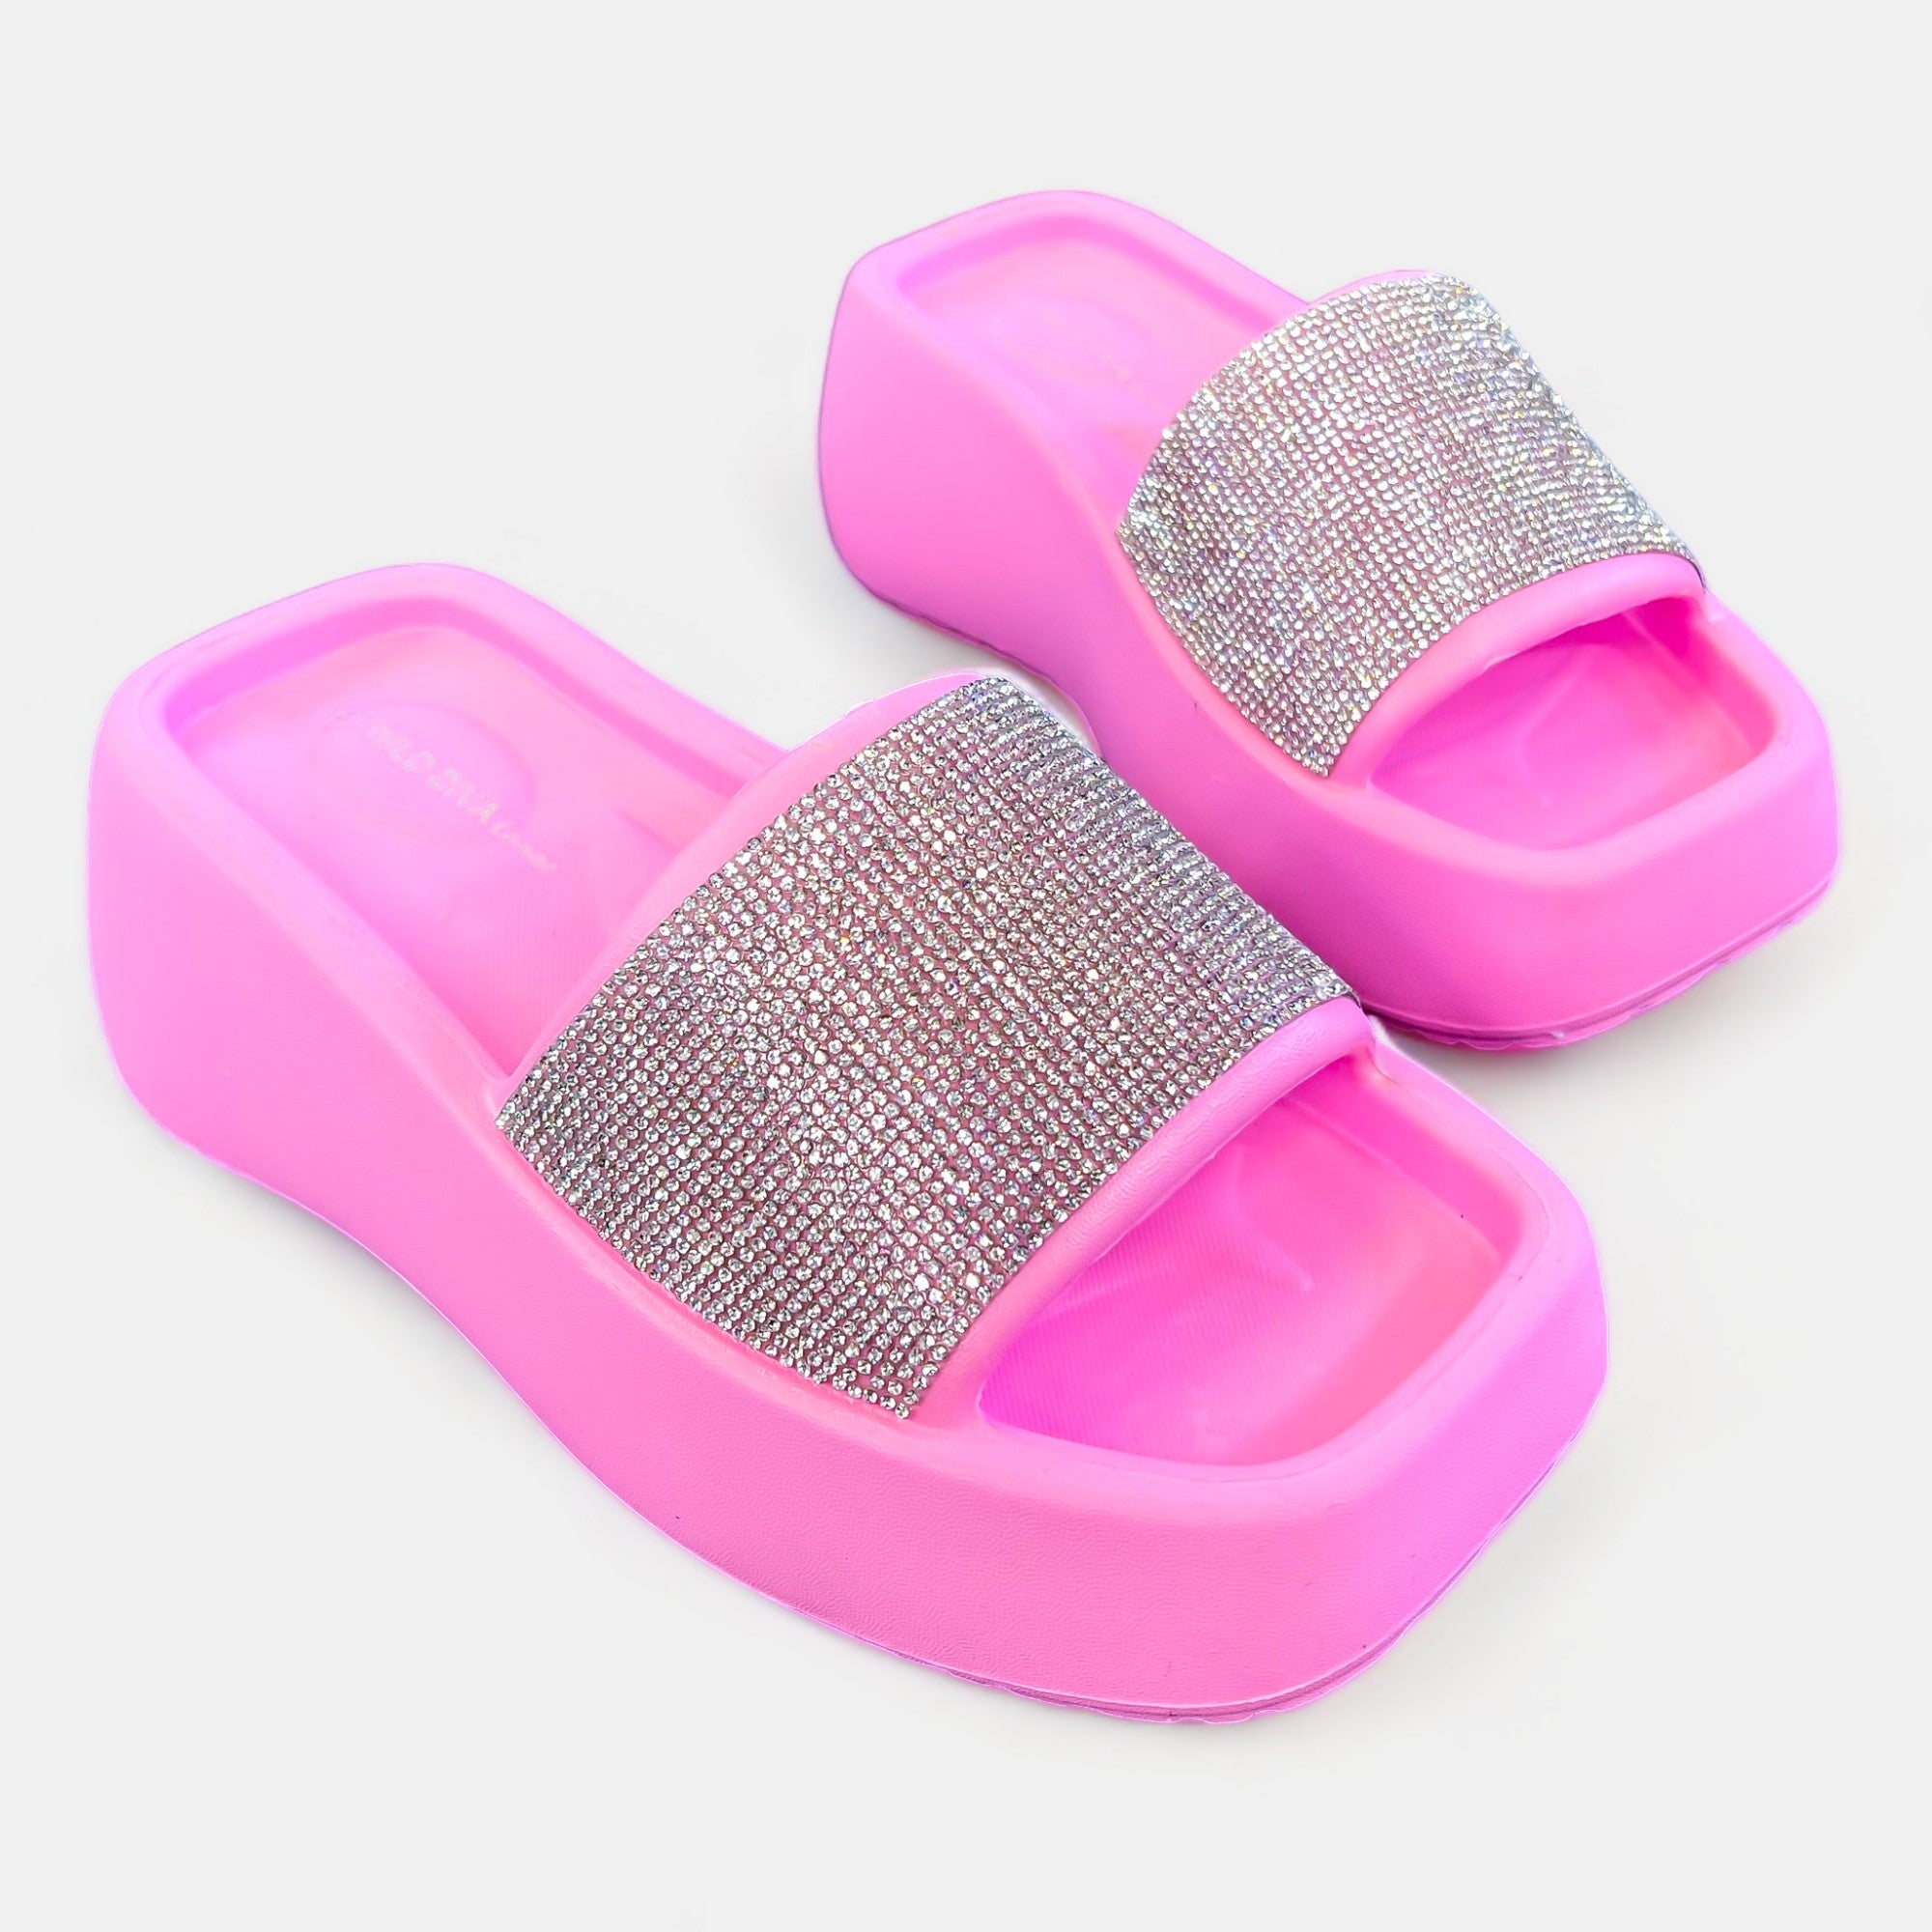 Pink Rhinestone Slip On Platform Sandals